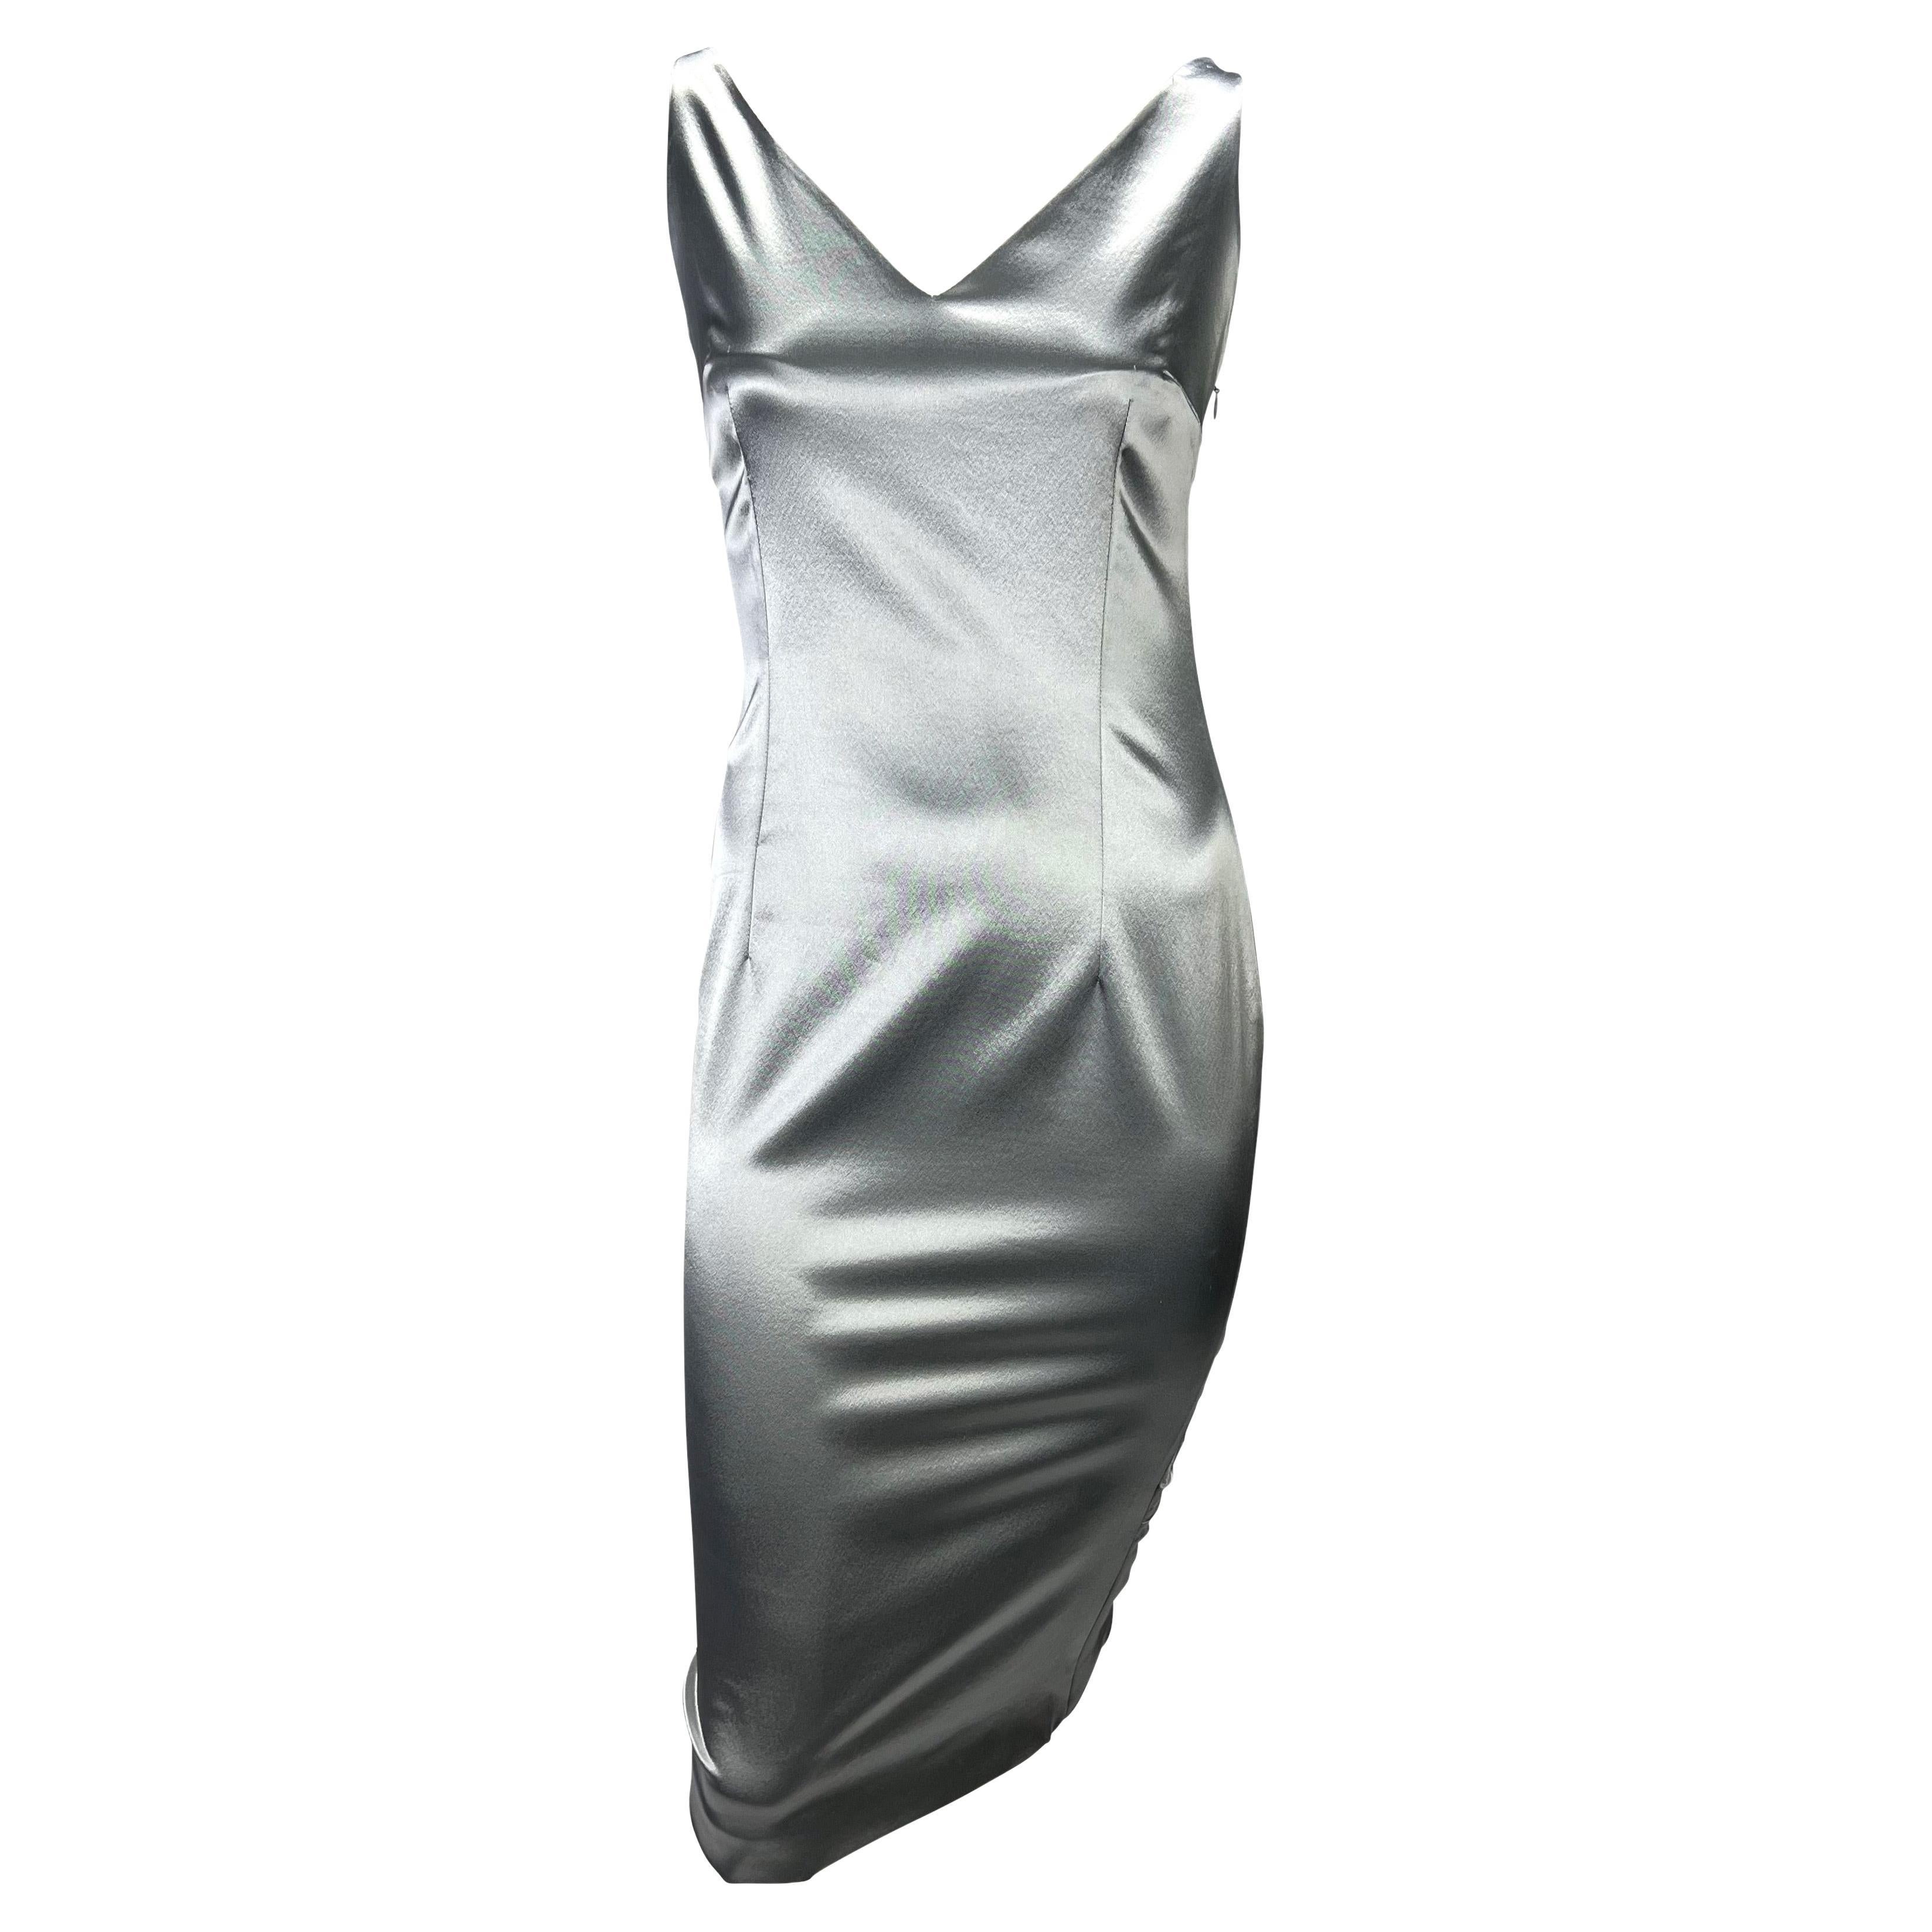 Ich präsentiere ein wunderschönes Kleid aus silbernem Satin aus der Christian Dior Boutique, entworfen von John Galliano. Dieses wunderschöne Kleid aus der Frühjahr/Sommer-Kollektion 2004 in Rotgold hat einen V-Ausschnitt, einen V-Ausschnitt am